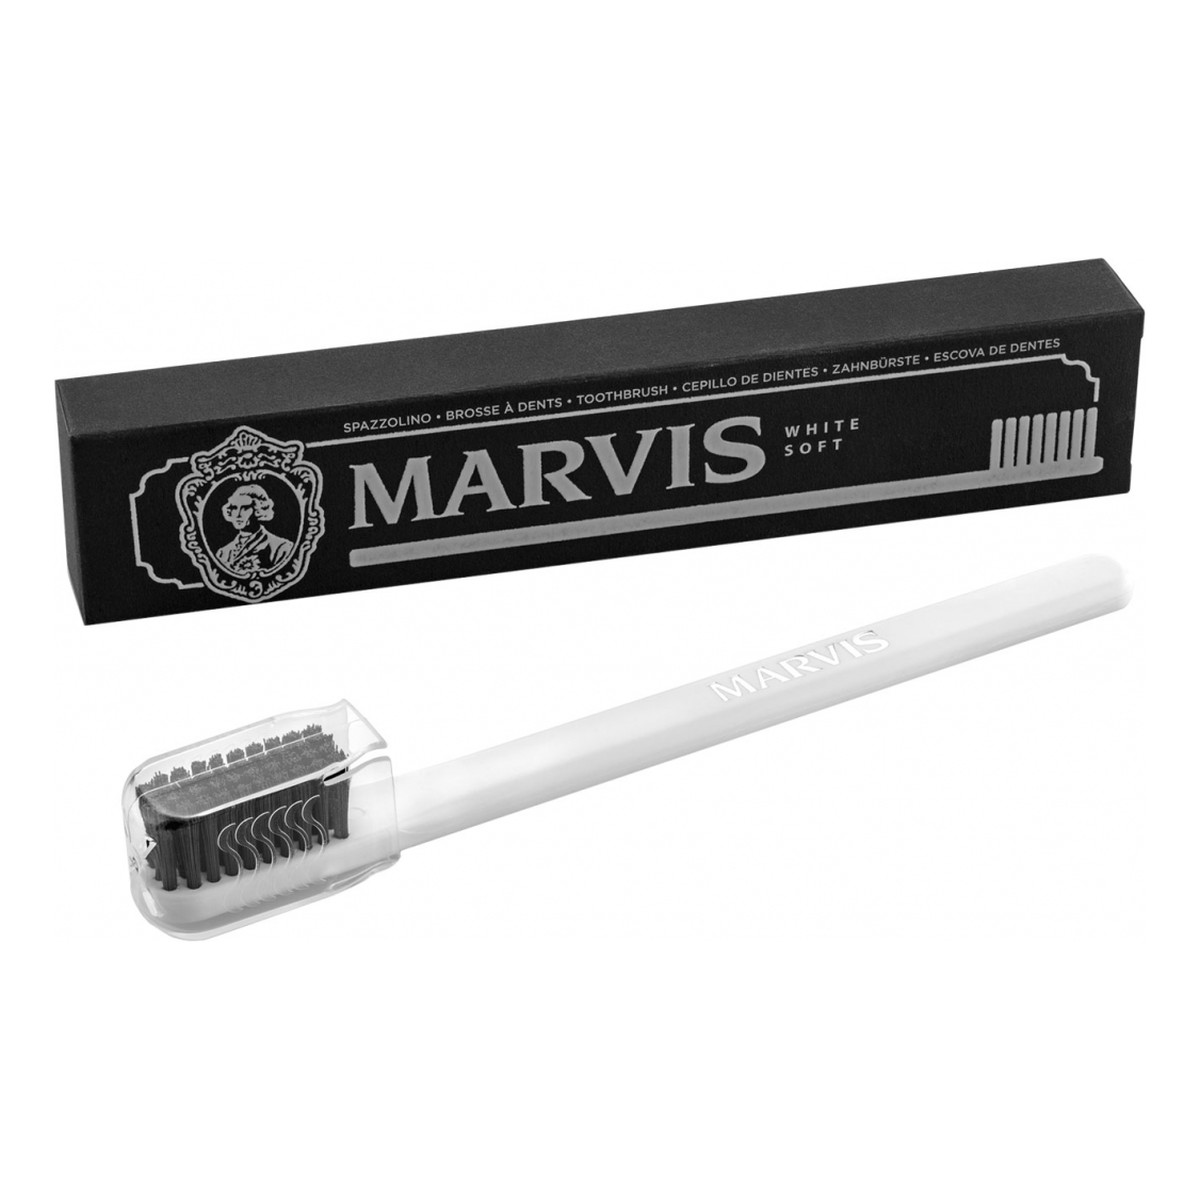 Marvis Toothbrush szczoteczka do zębów white soft